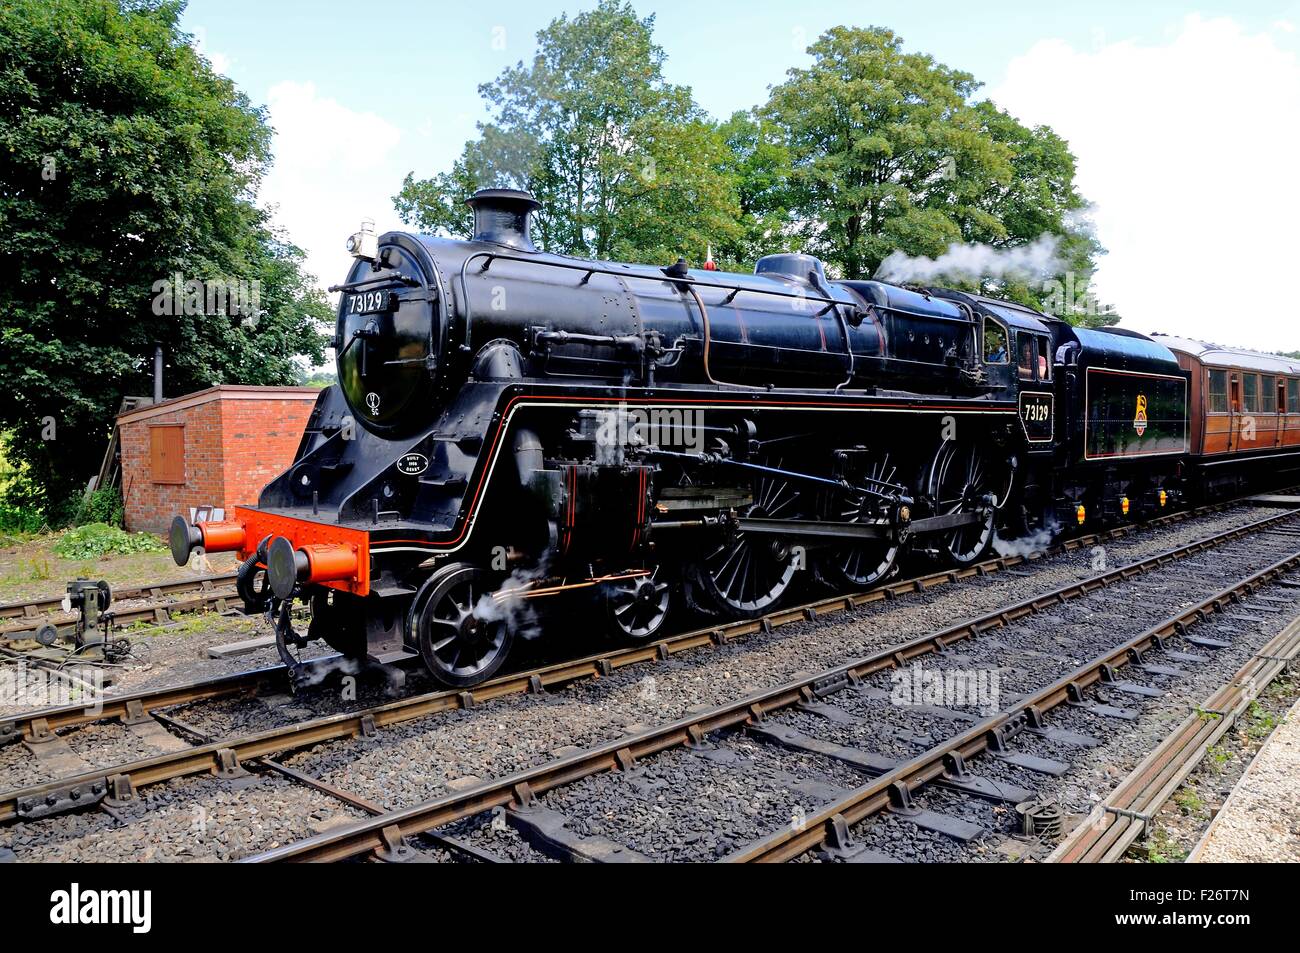 British Rail Locomotive à vapeur 4-6-0 standard de classe 5 nombre 73129 British Rail en laissant noir la gare, Arley. Banque D'Images